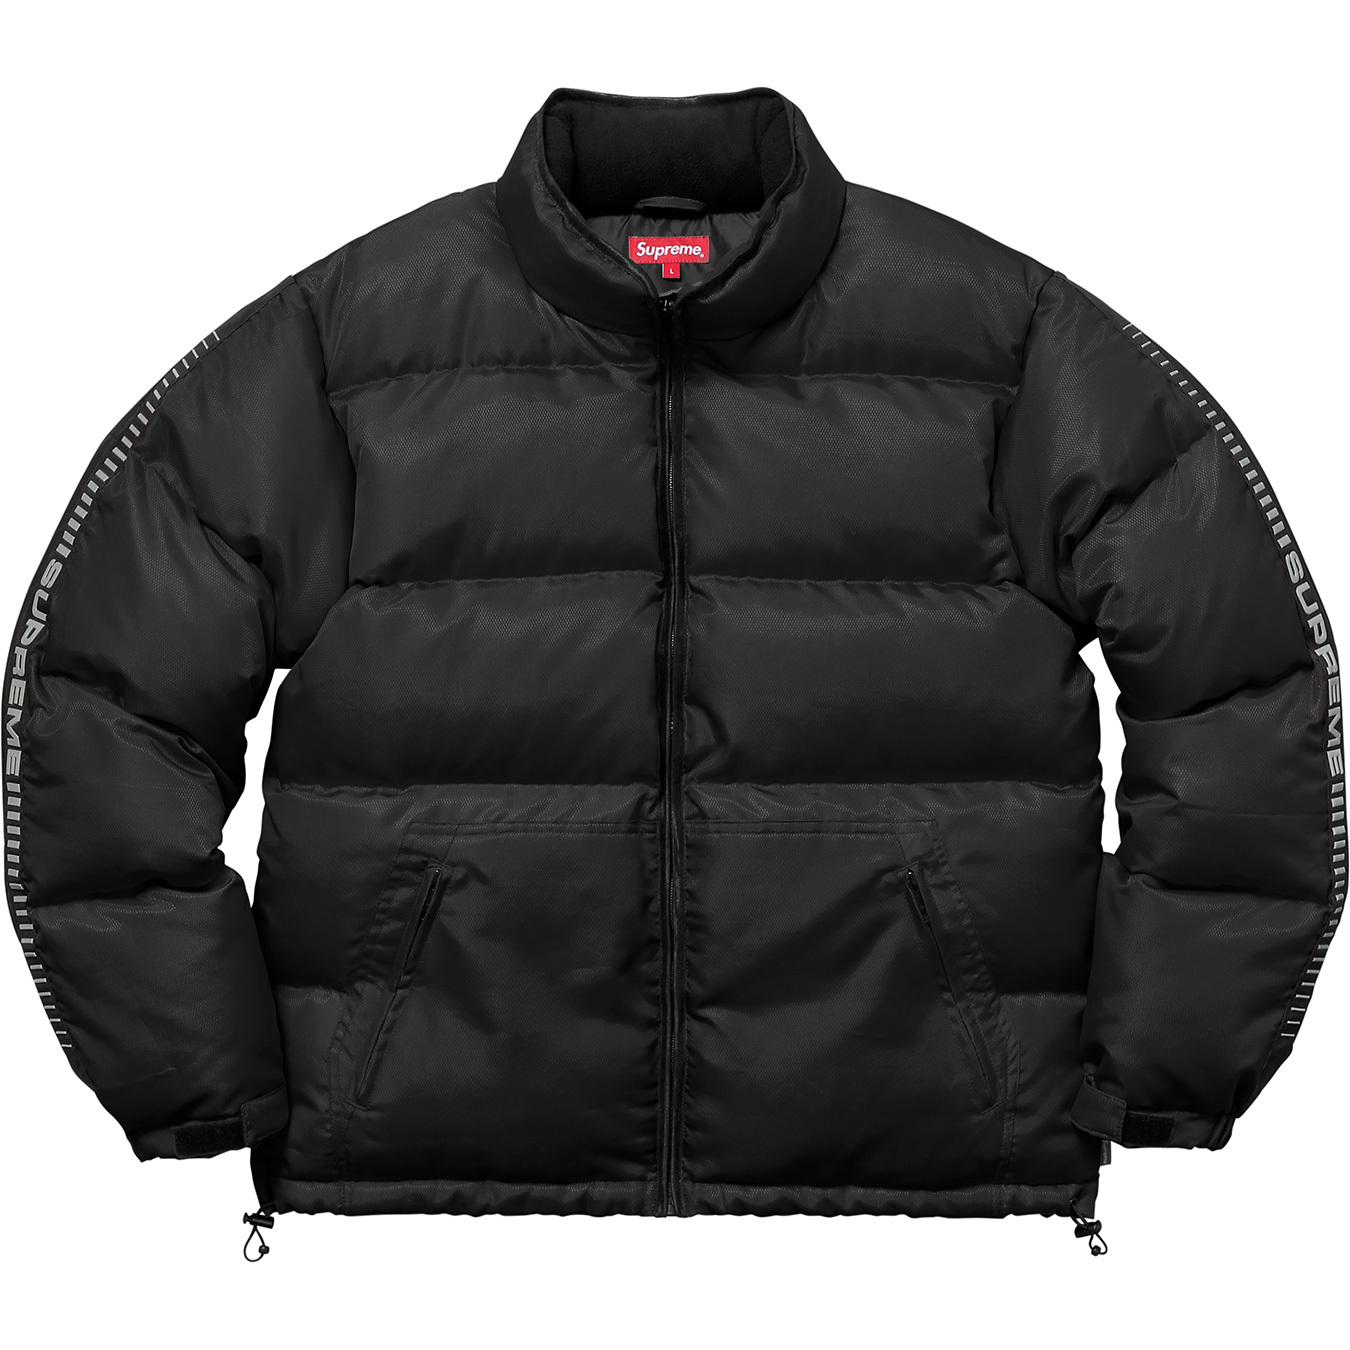 Supreme Reflective Sleeve Logo Puffy Jacket Black - FW17